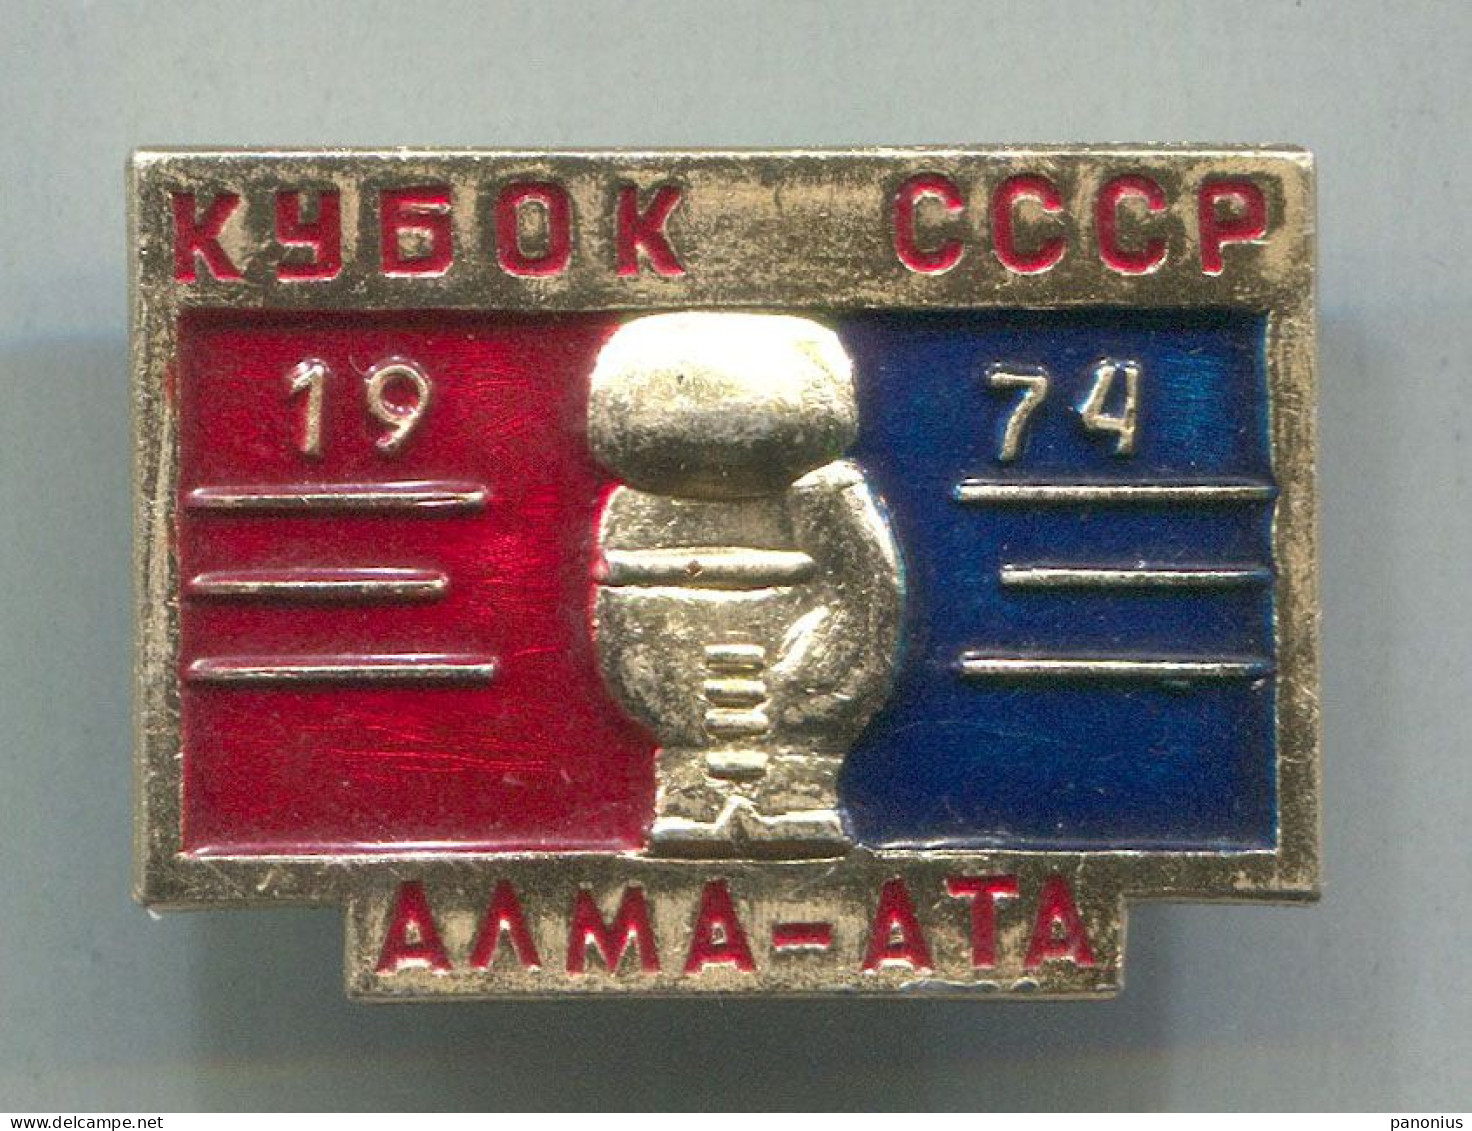 Boxing Box Boxen Pugilato - Alma - Ata Kazakhstan 1974. USSR Russia, Vintage  Pin  Badge  Abzeichen - Boxen